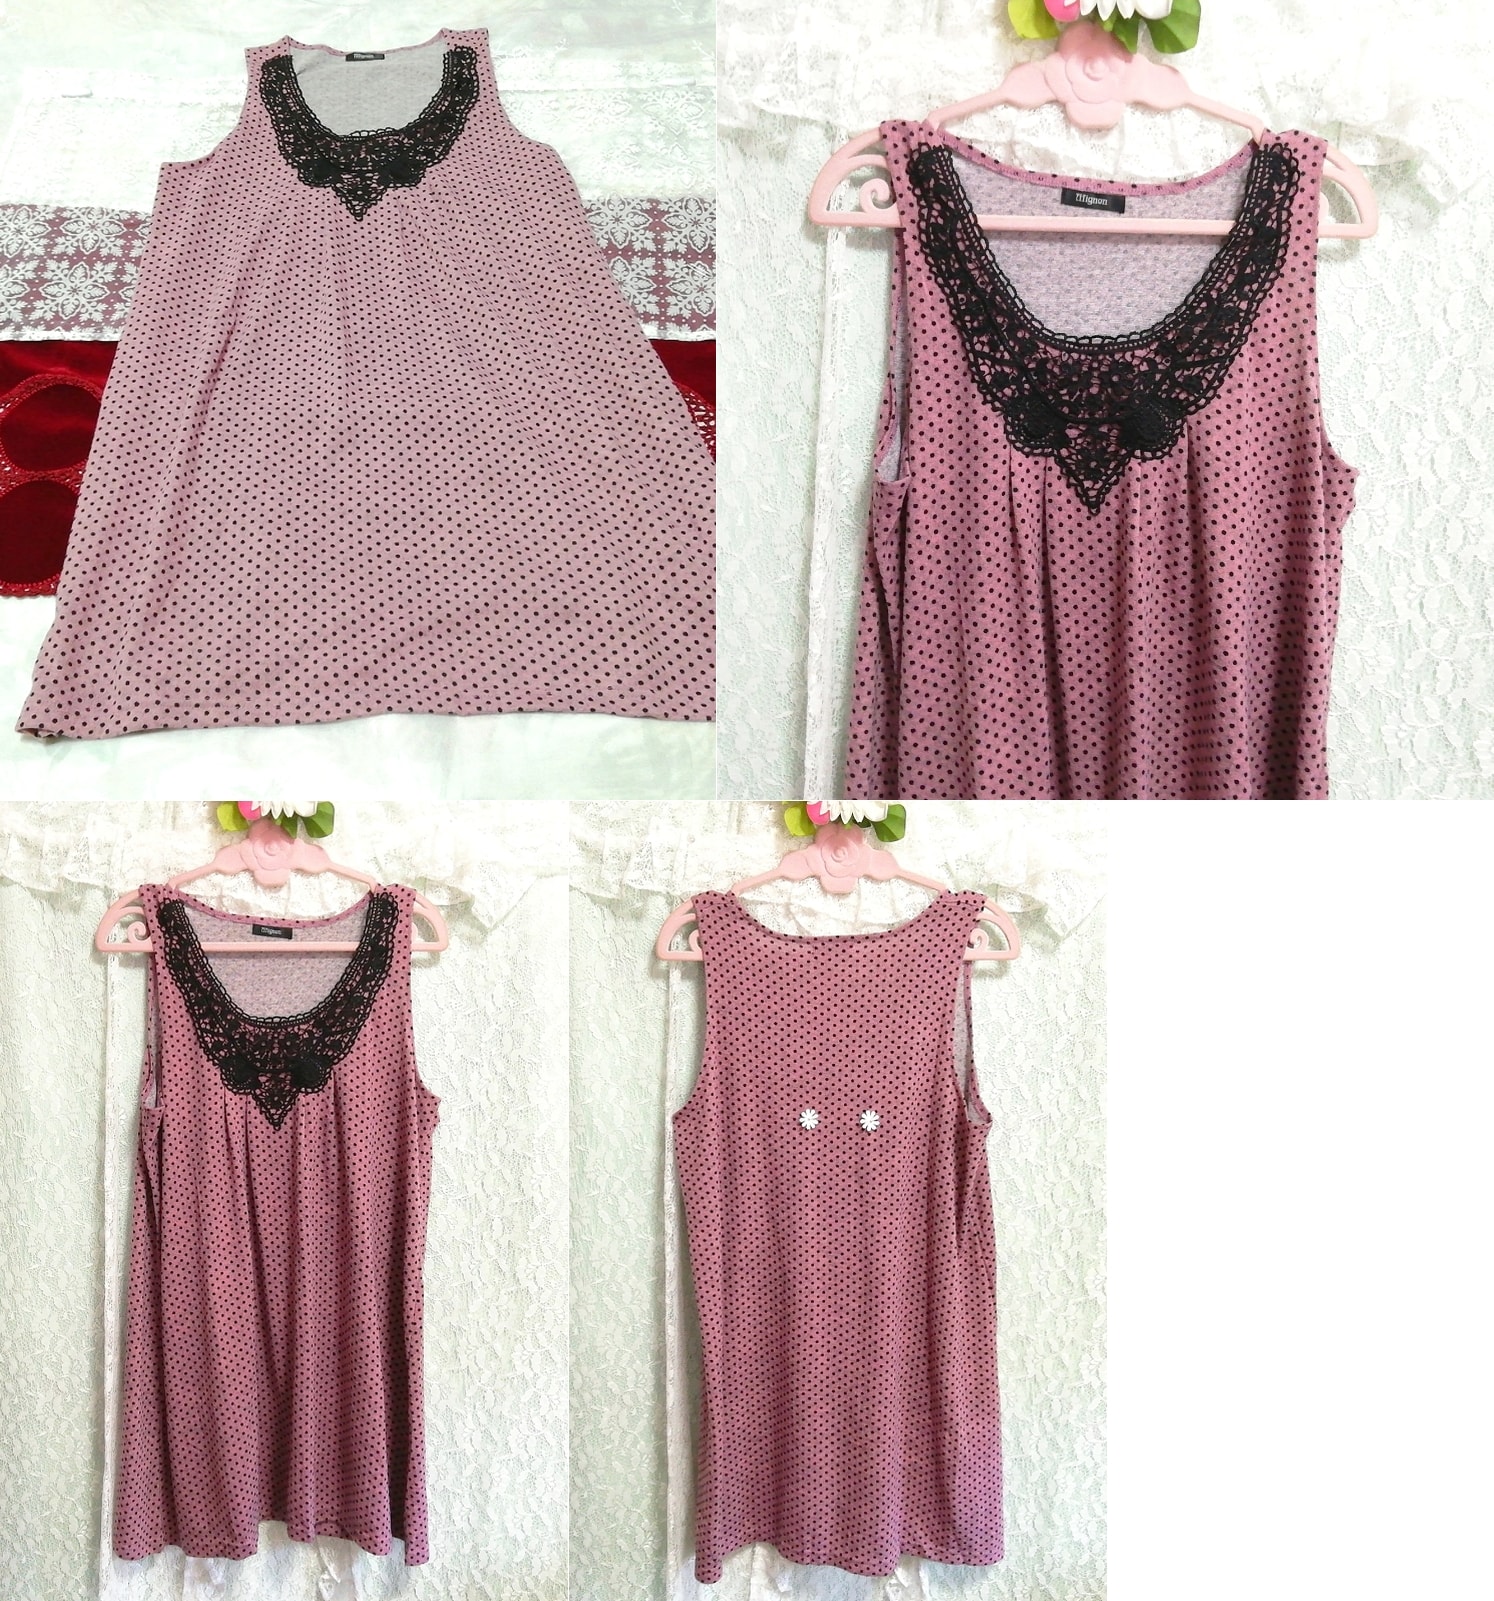 Purple black lace sleeveless negligee nightgown nightwear mini dress, mini skirt, l size